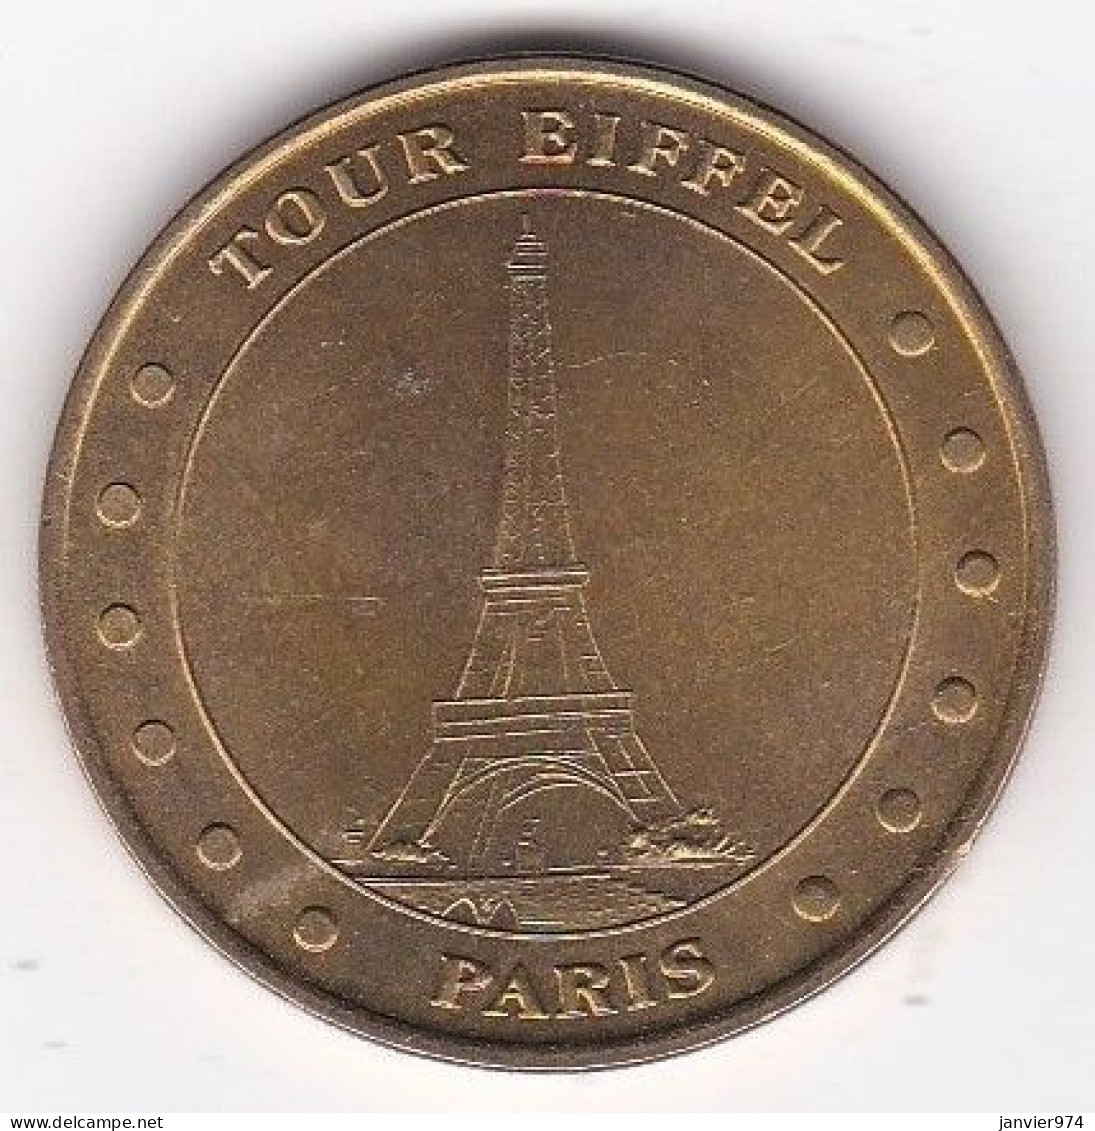 75. Paris. Tour Eiffel 2002 - 2002